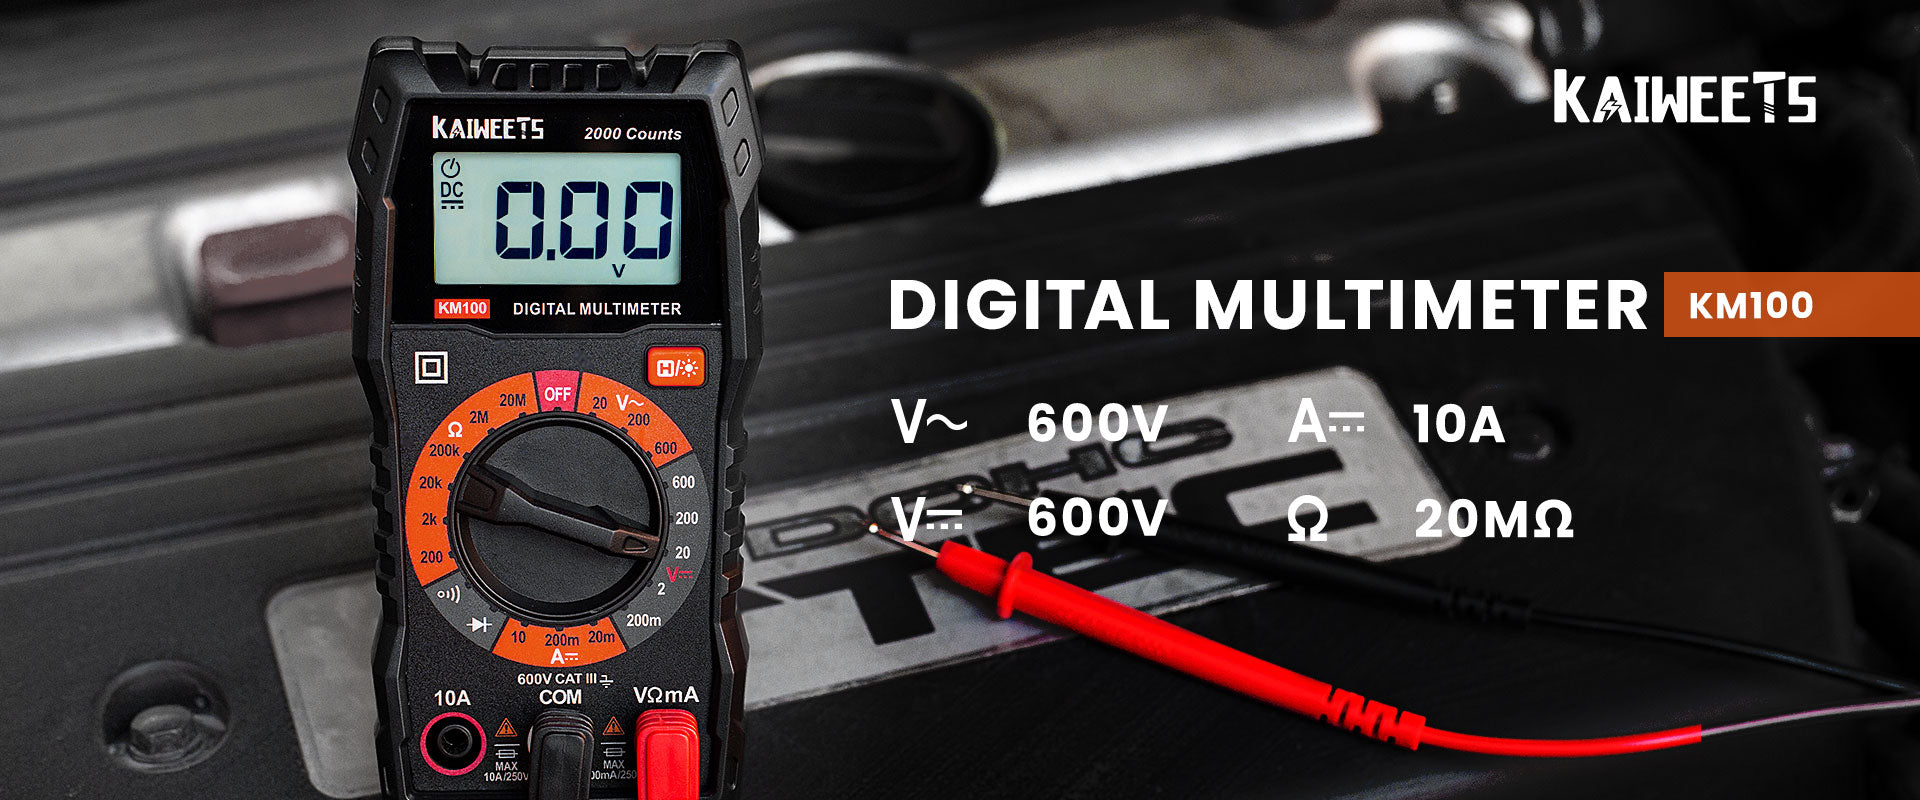 Multimètre numérique KAIWEETS KM100 pour testeur de tension AC/DC